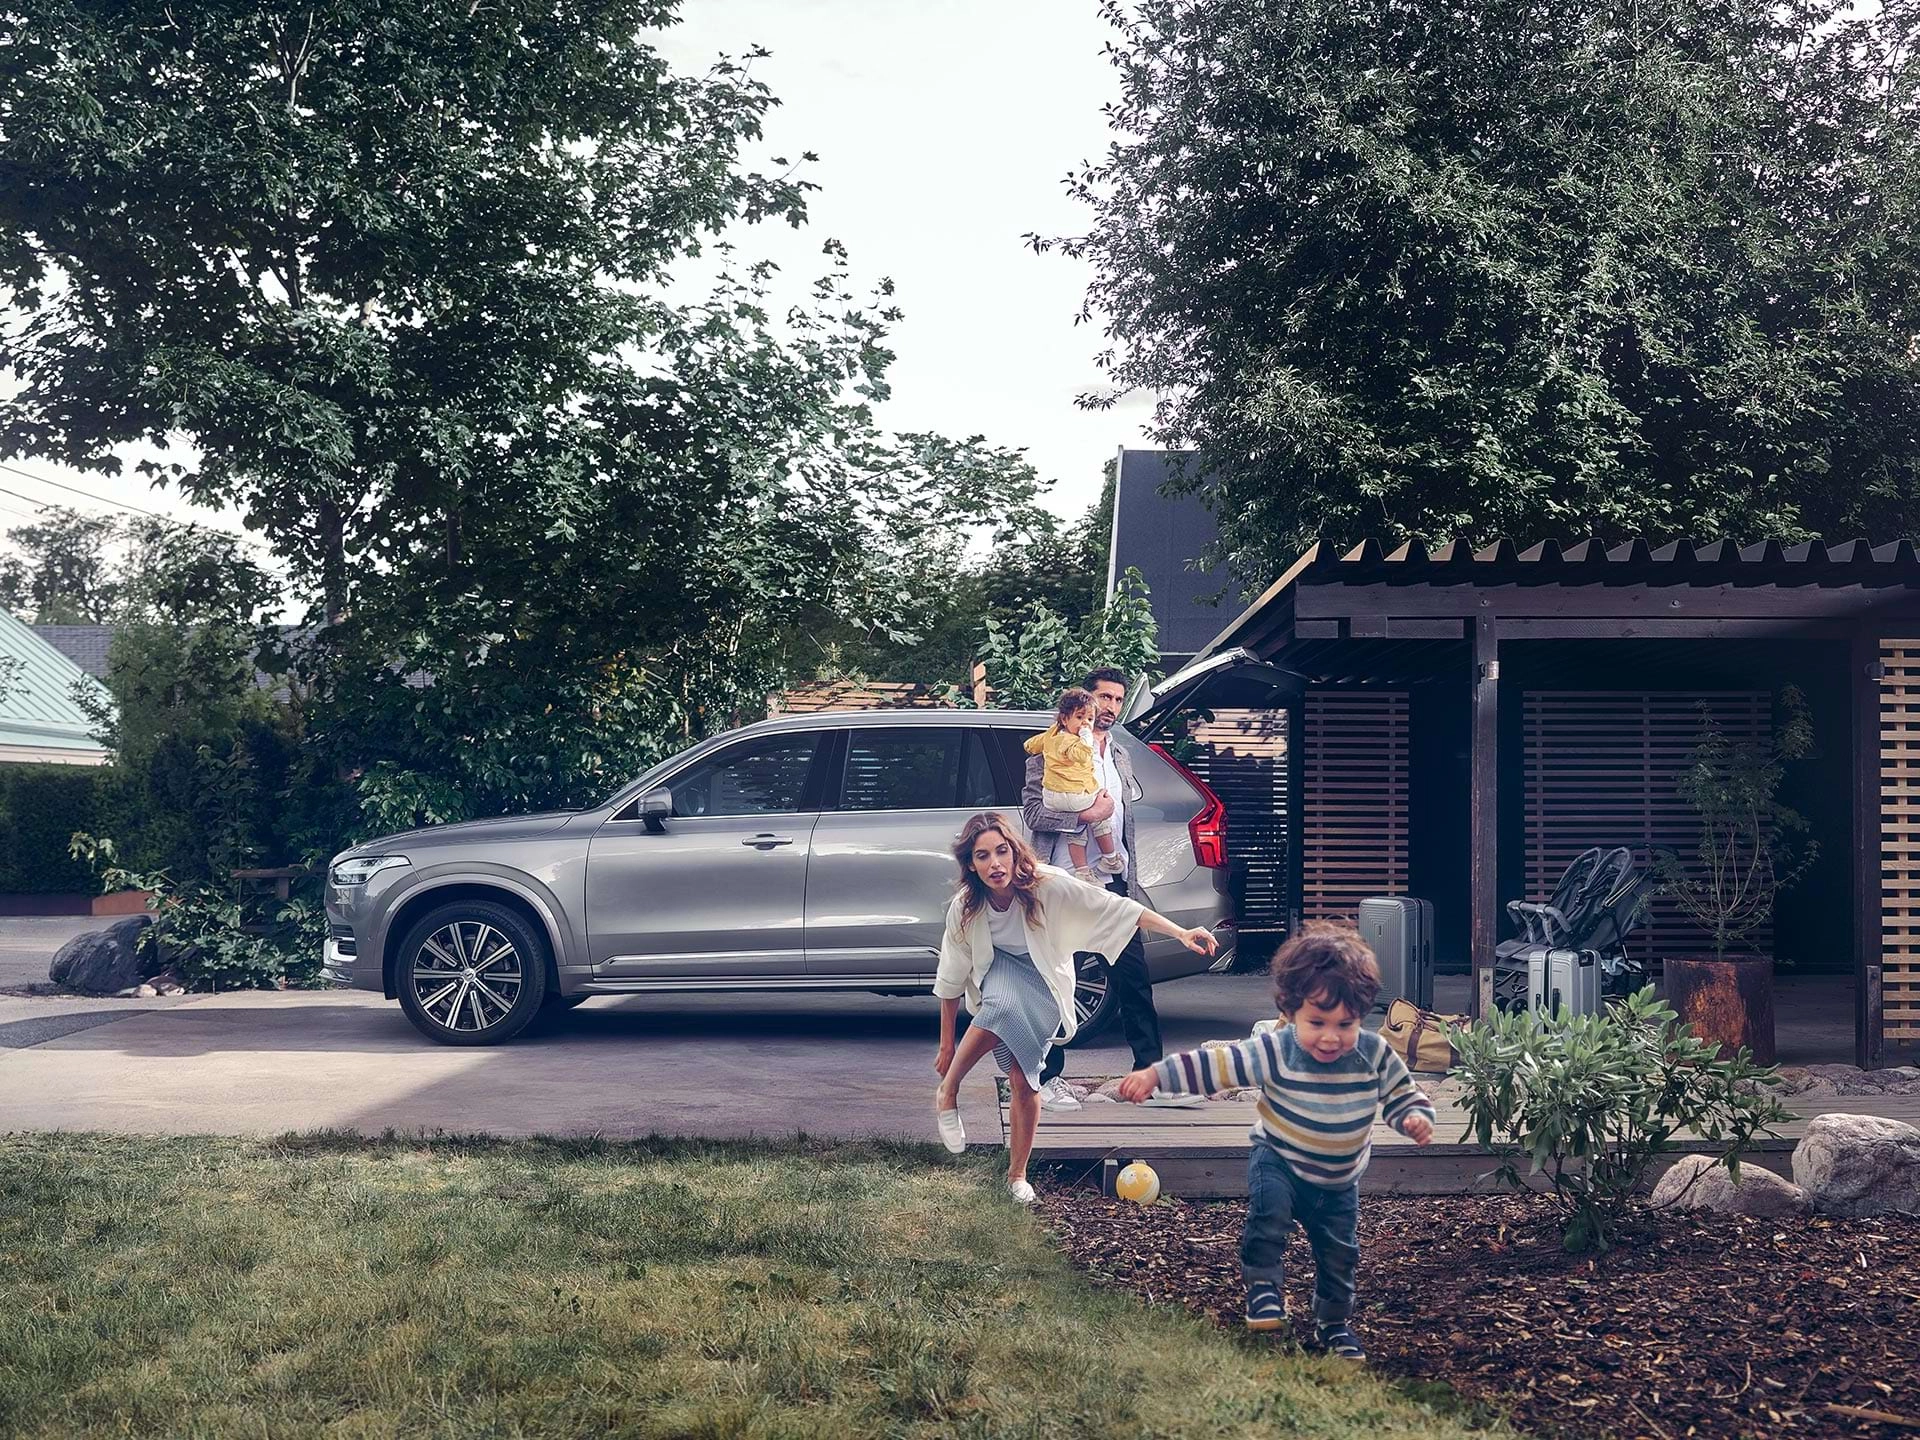 Dok se porodica iz predgrađa sprema na put u svom Volvo SUV-u, dijete trči preko dvorišta, a ganja ga njegova majka.